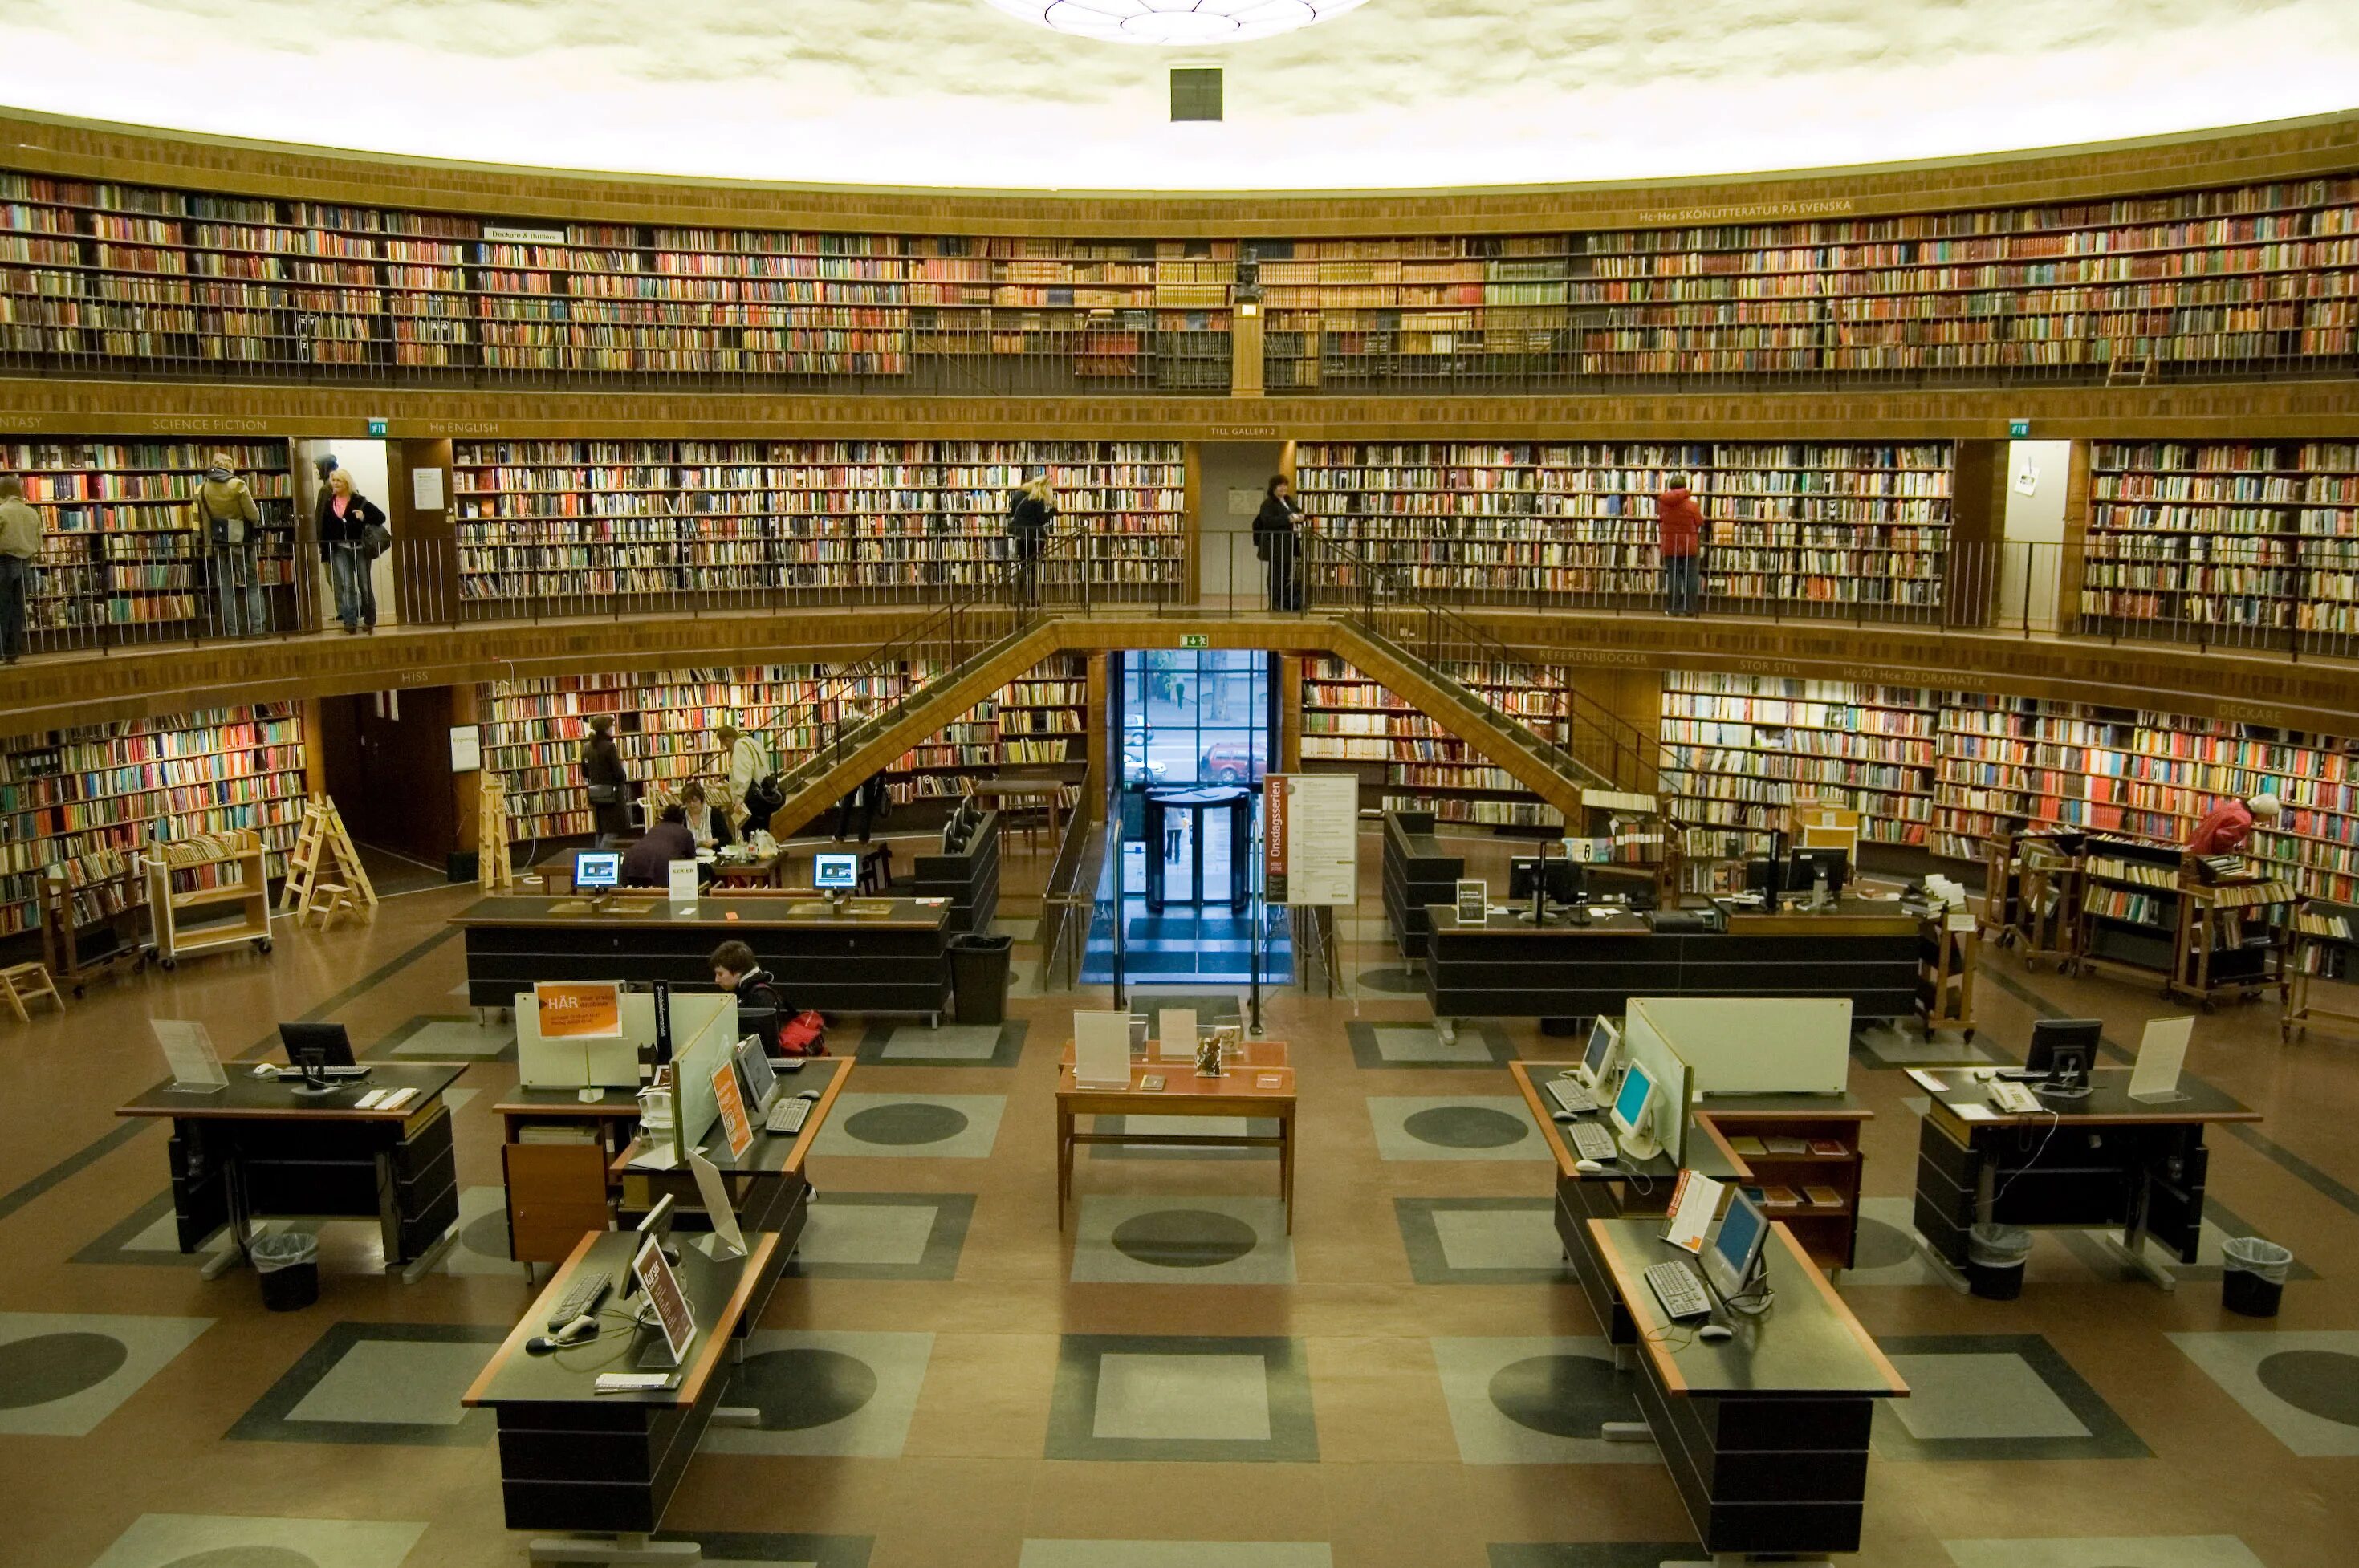 Библиотека является центром. Стокгольмская городская библиотека, Стокгольм. Лейпцигская немецкая библиотека. Стокгольмская общественная библиотека Швеция. Библиотека в Стокгольме Асплунд.